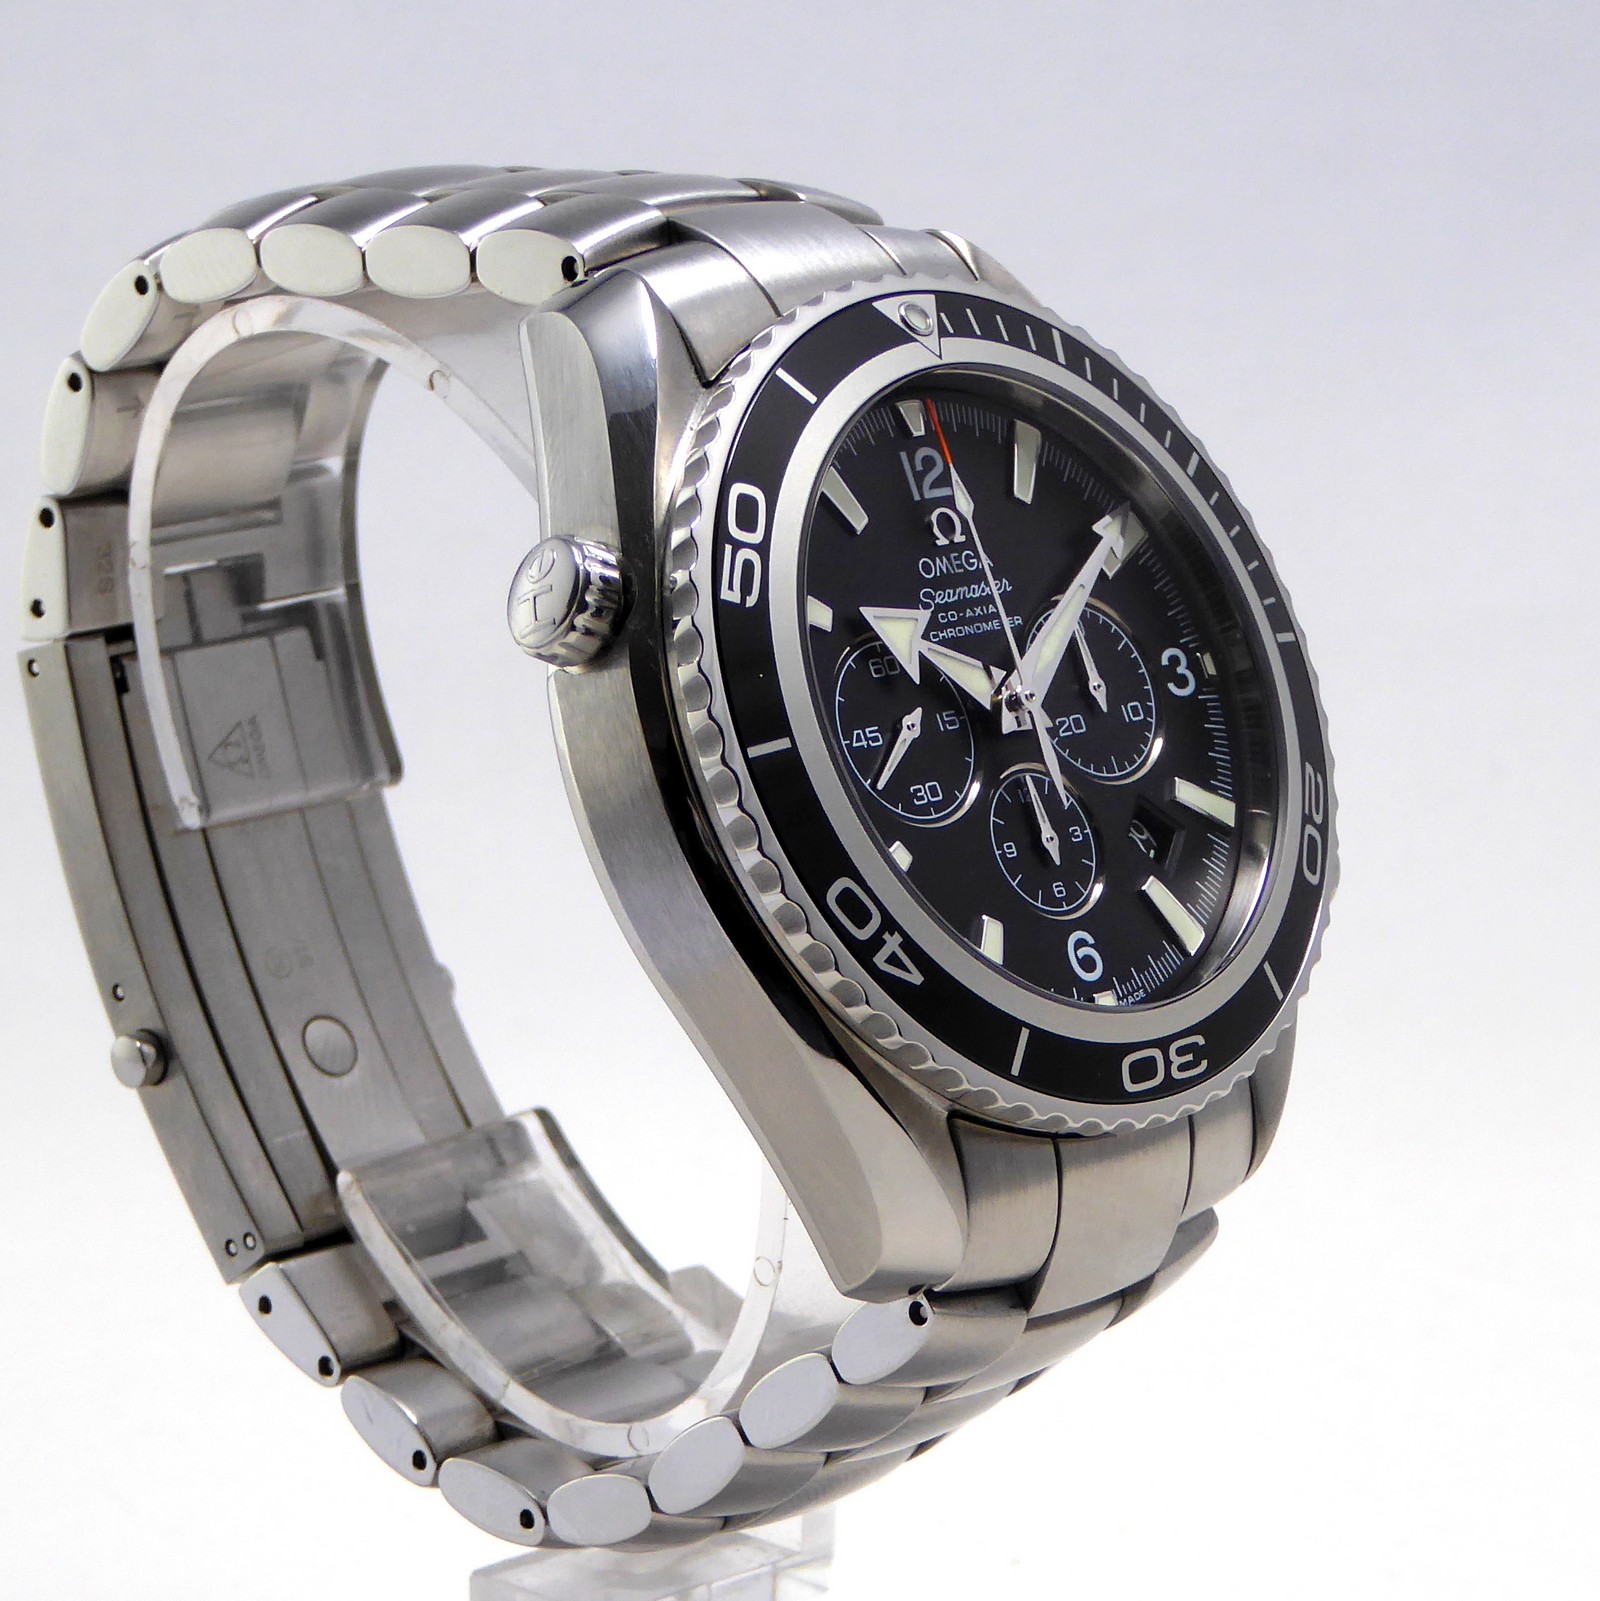 Omega Seamaster Planet Ocean Chronograph 45 mm Full Set Bracelet watch 2210.50